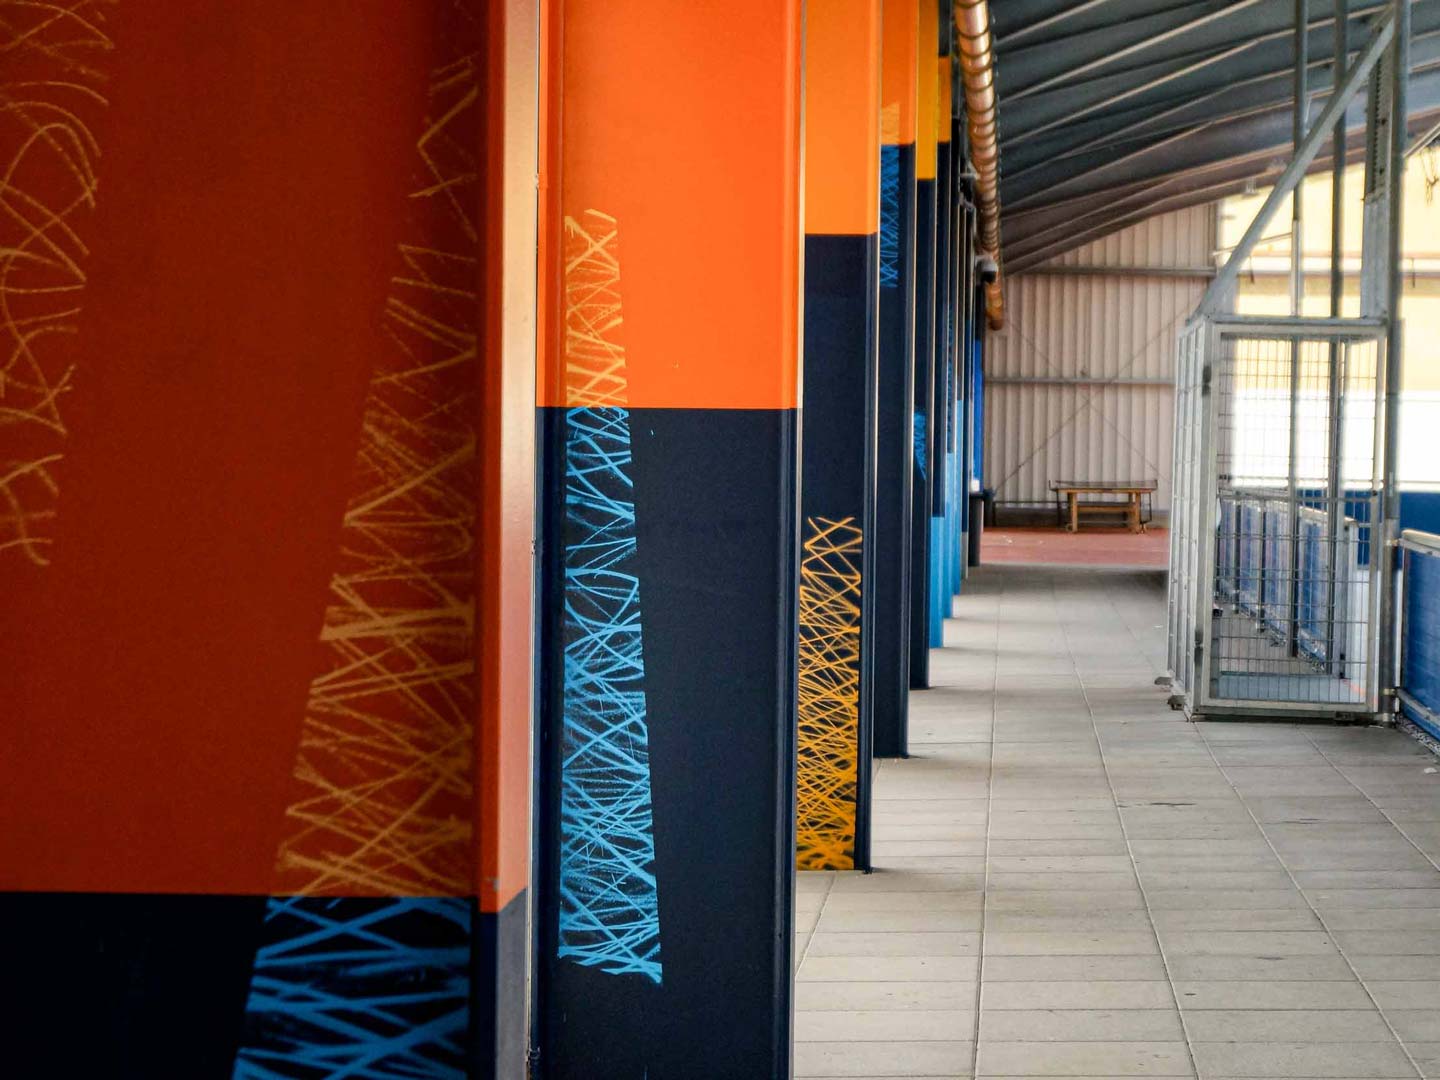 Gestaltung der Stahlträger der Lohrheimer Kaltsporthalle durch Studio Lacks